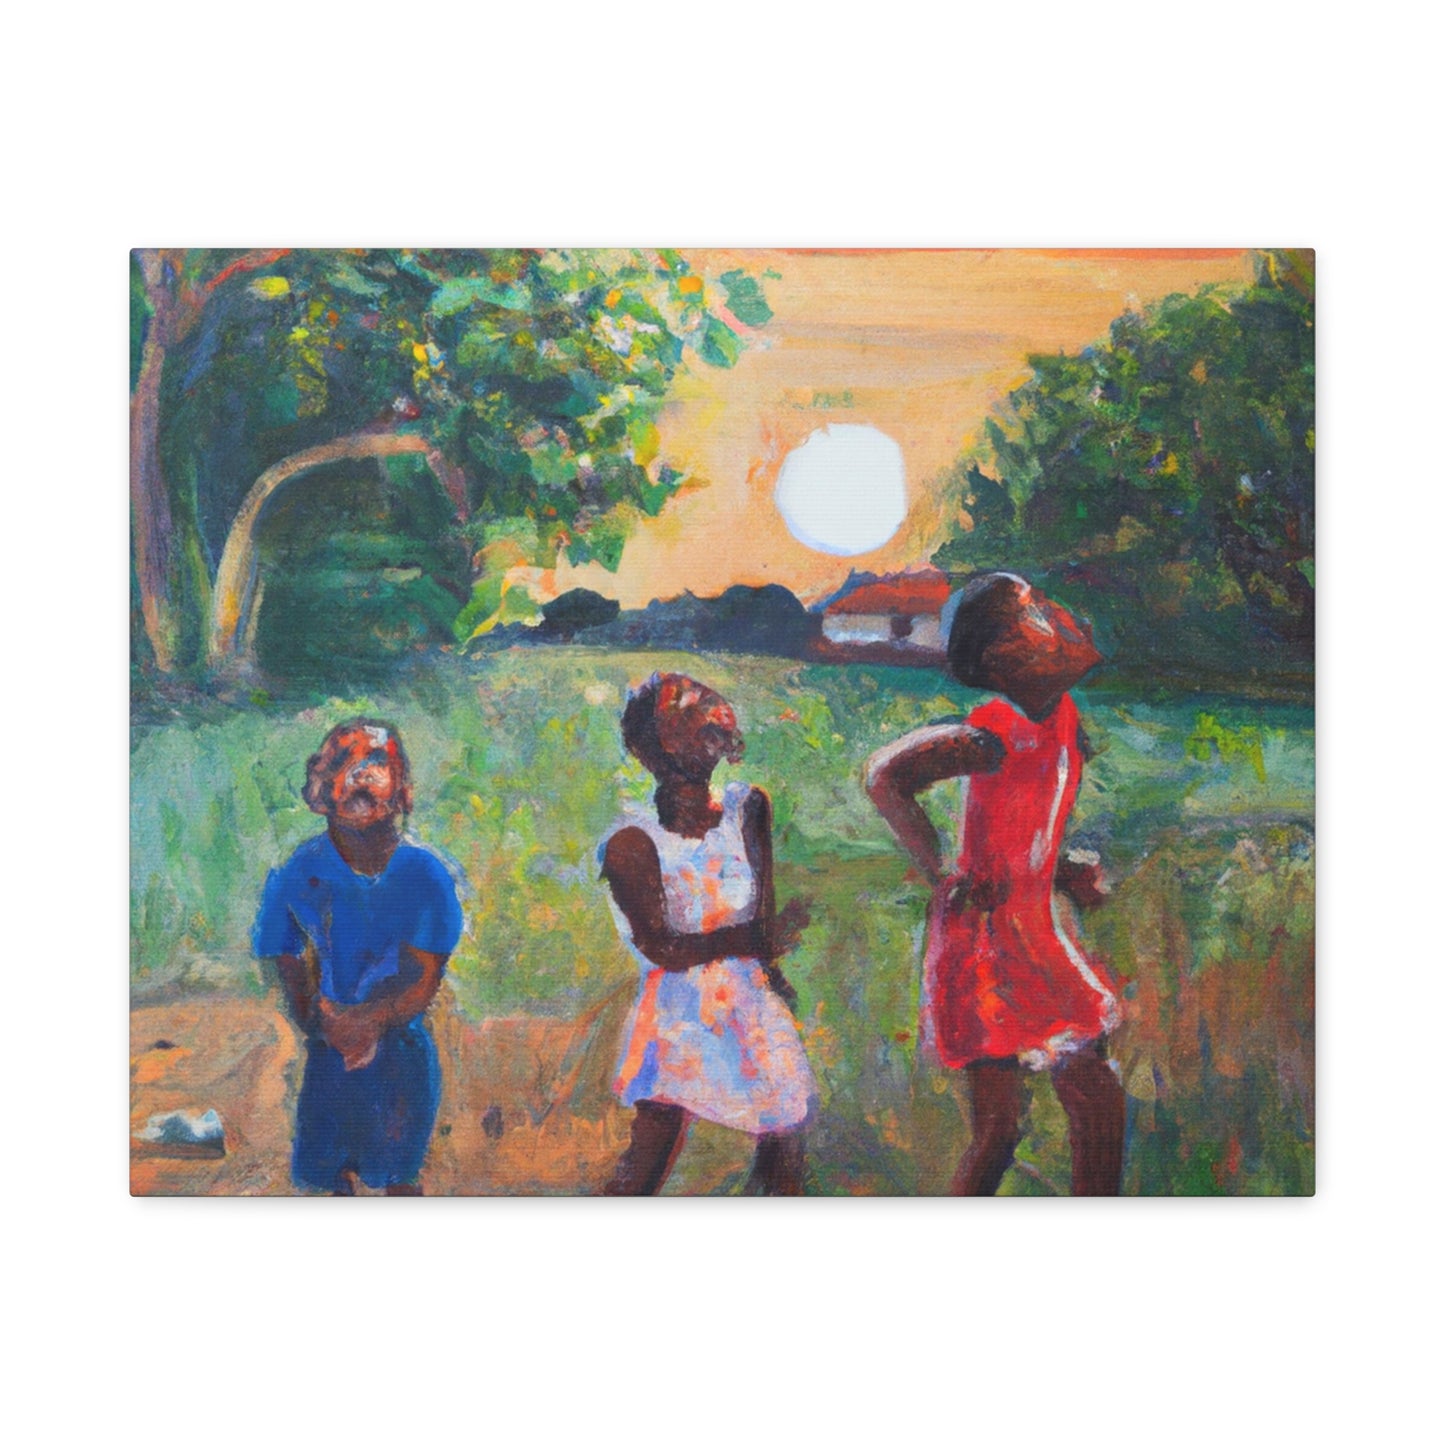 Catching Fireflies Wall Art | 20"x16" Afrocentric Children's Magic Canvas Print